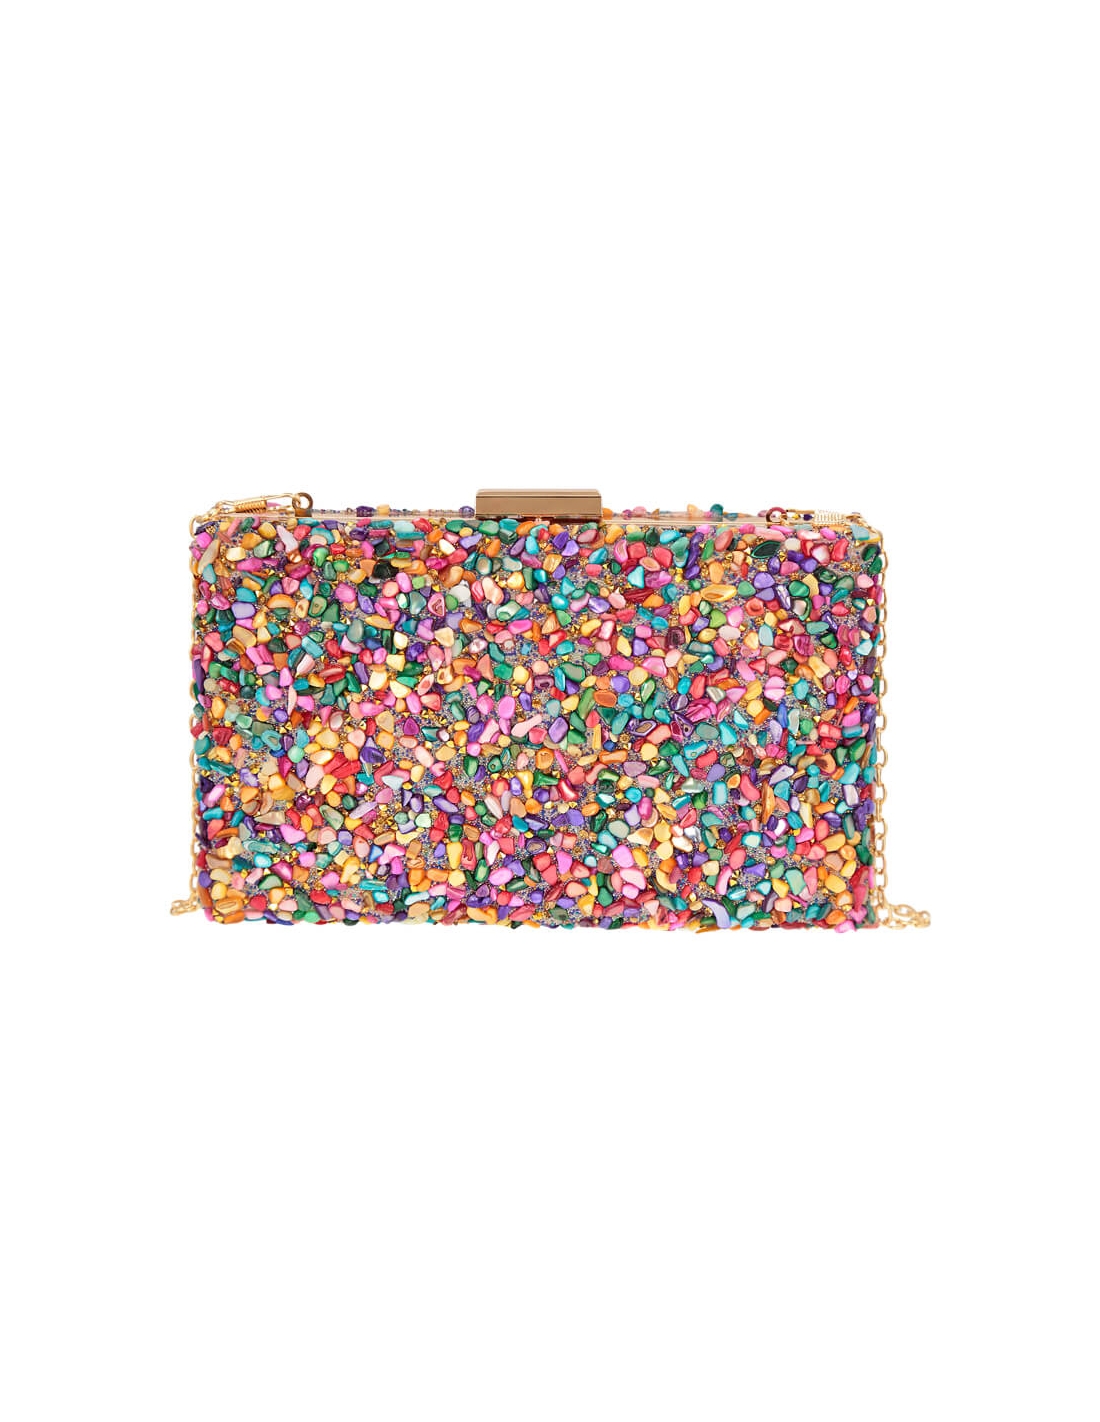 Bolsos Mujer Multicolor – Clutch Boda – Flormoda